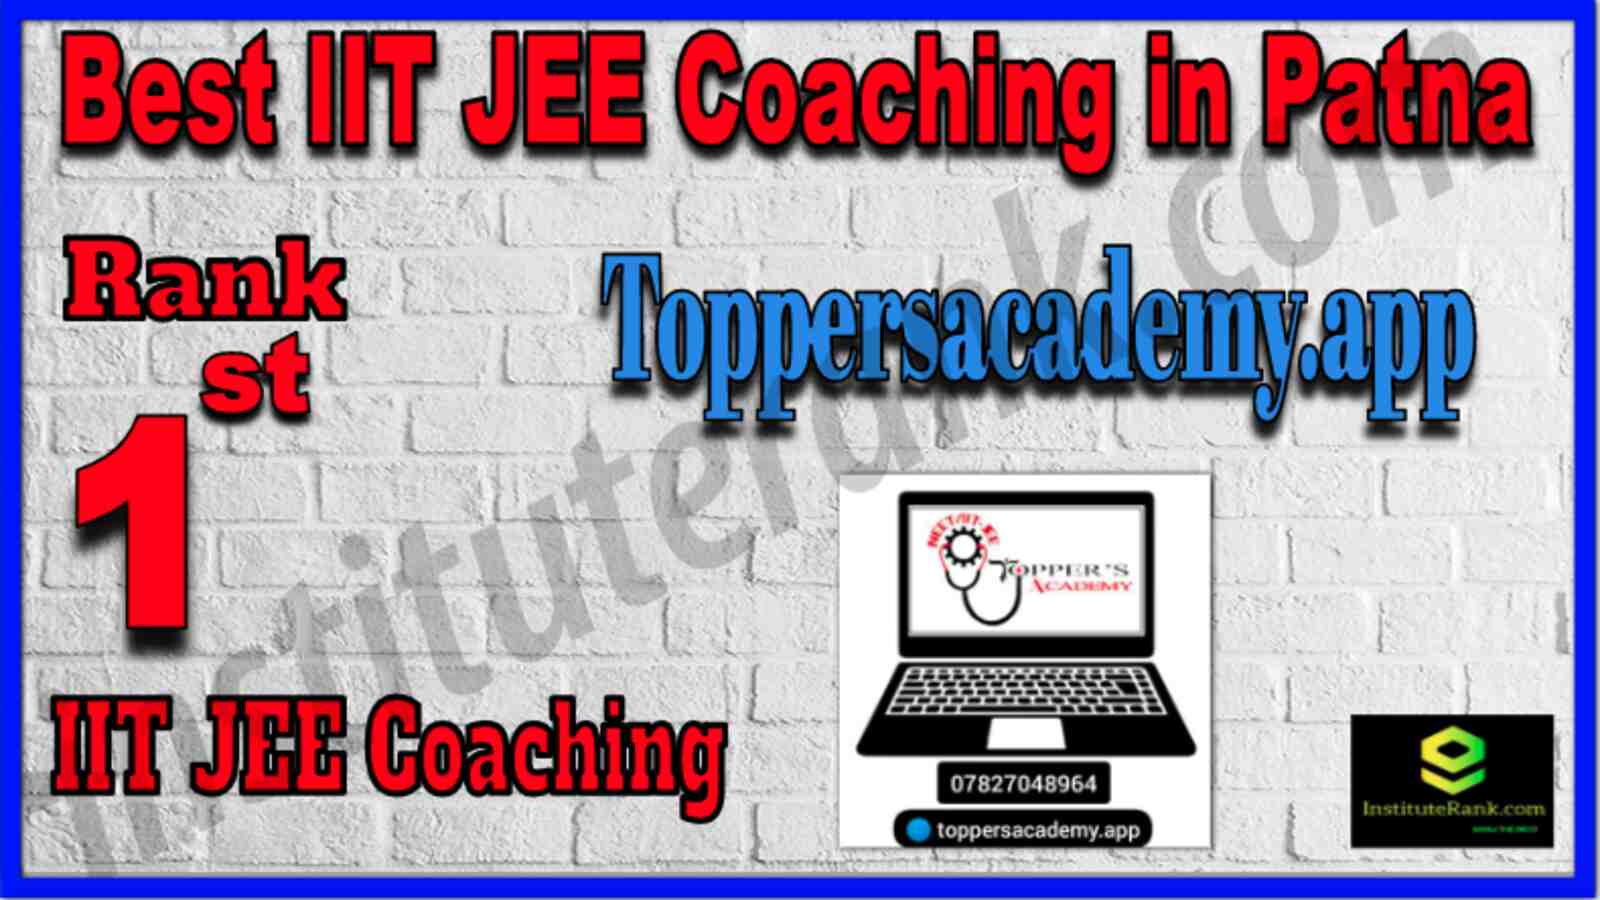 Rank 1 Best IIT JEE Coaching in Patna 